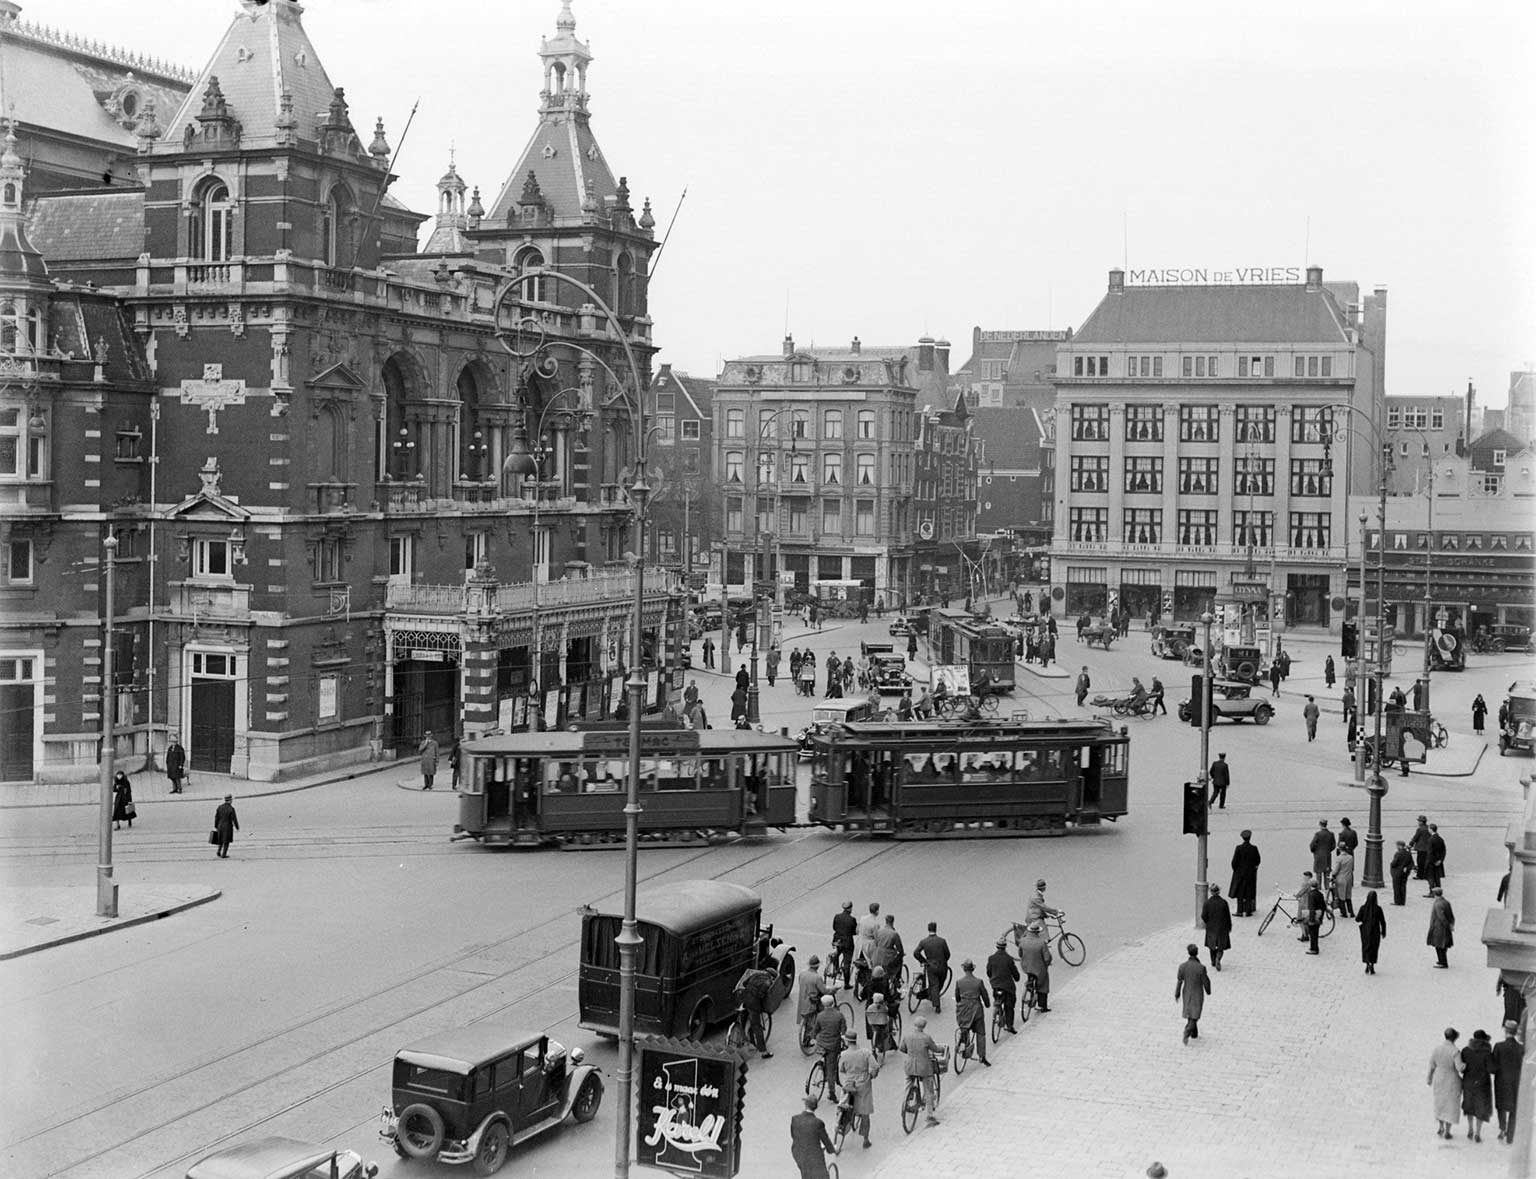 Leidseplein in 1934, with Stadsschouwburg from 1894